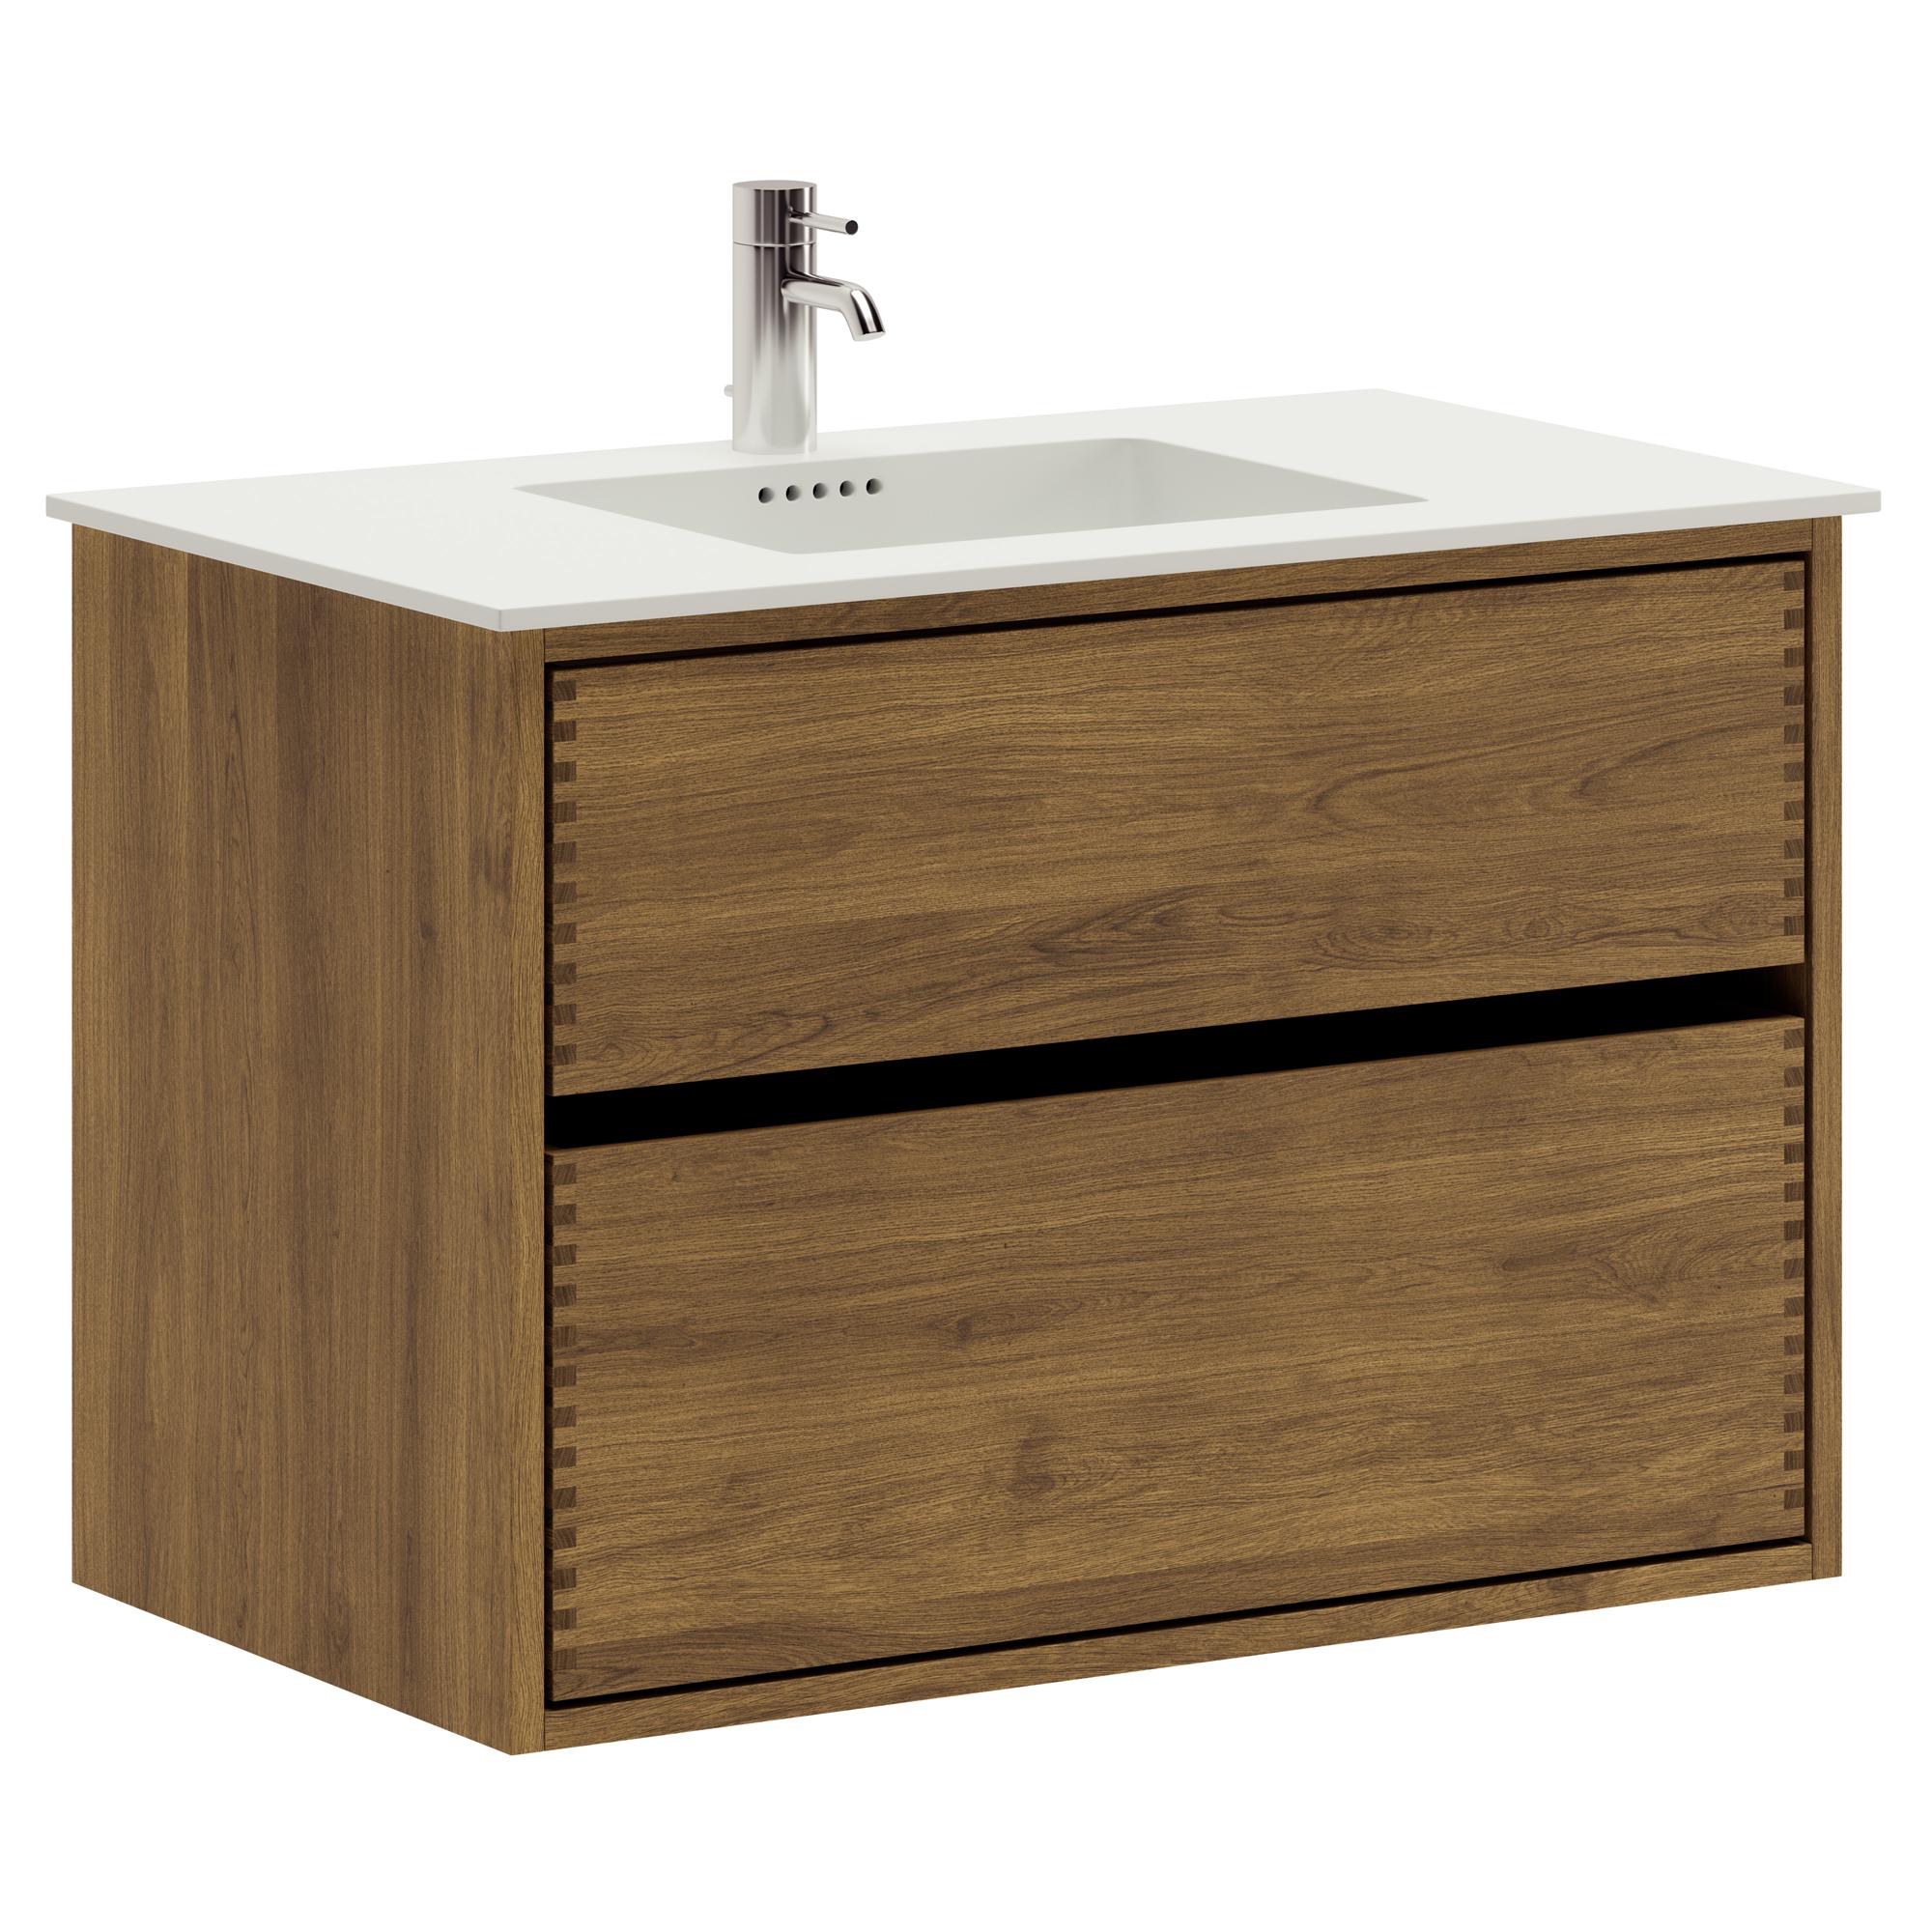 80 cm dunkel-geölter Just Wood Original-Badezimmermöbel mit 2 Schubladen und Solid Surface-Waschbecken